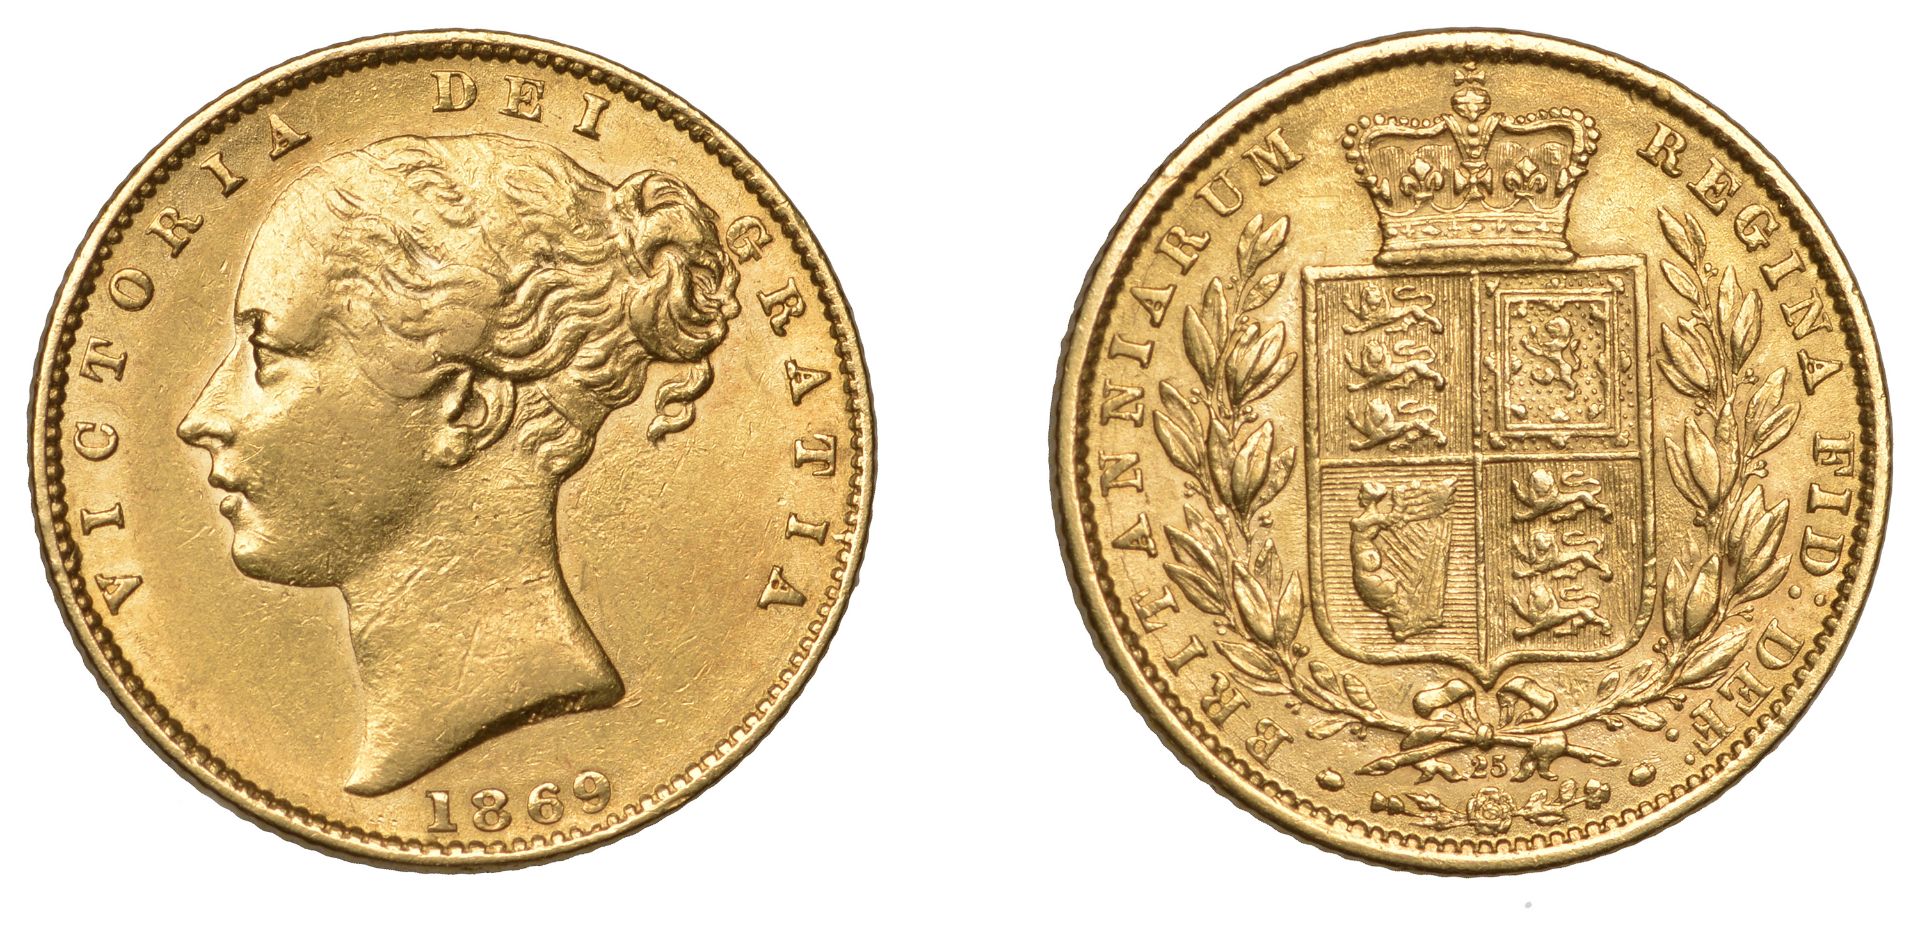 Victoria (1837-1901), Sovereign, 1869, die 25 (M 53; S 3853). Good very fine Â£340-Â£400